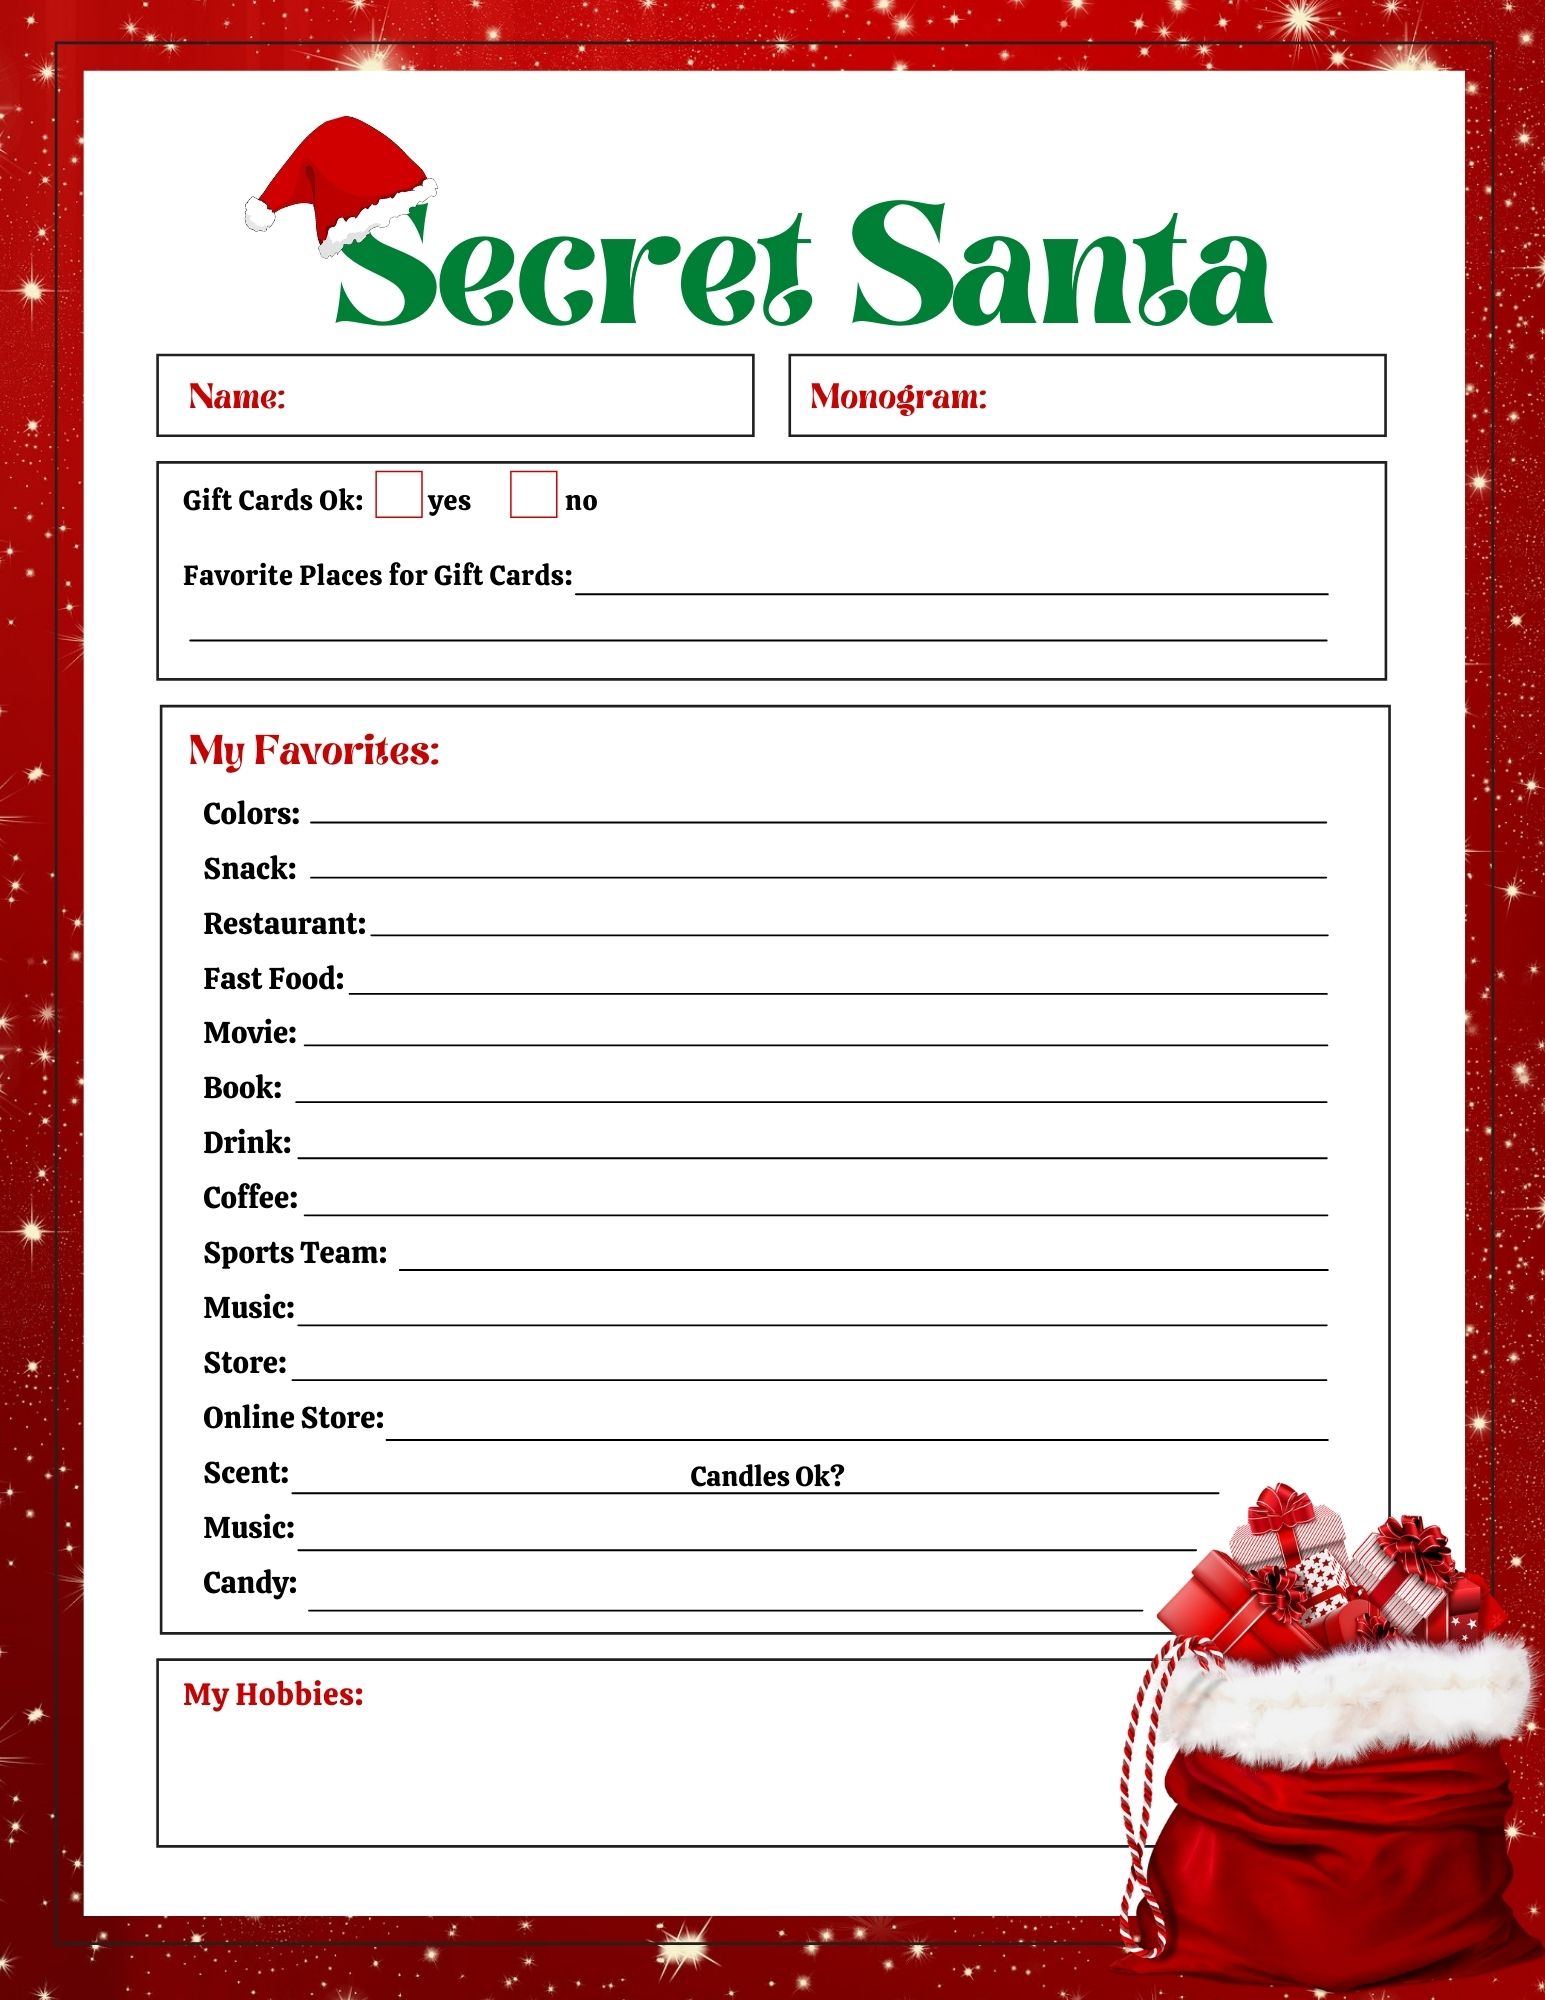 FREE Secret Santa List Printable Questionnaire 2 Options! Leap of